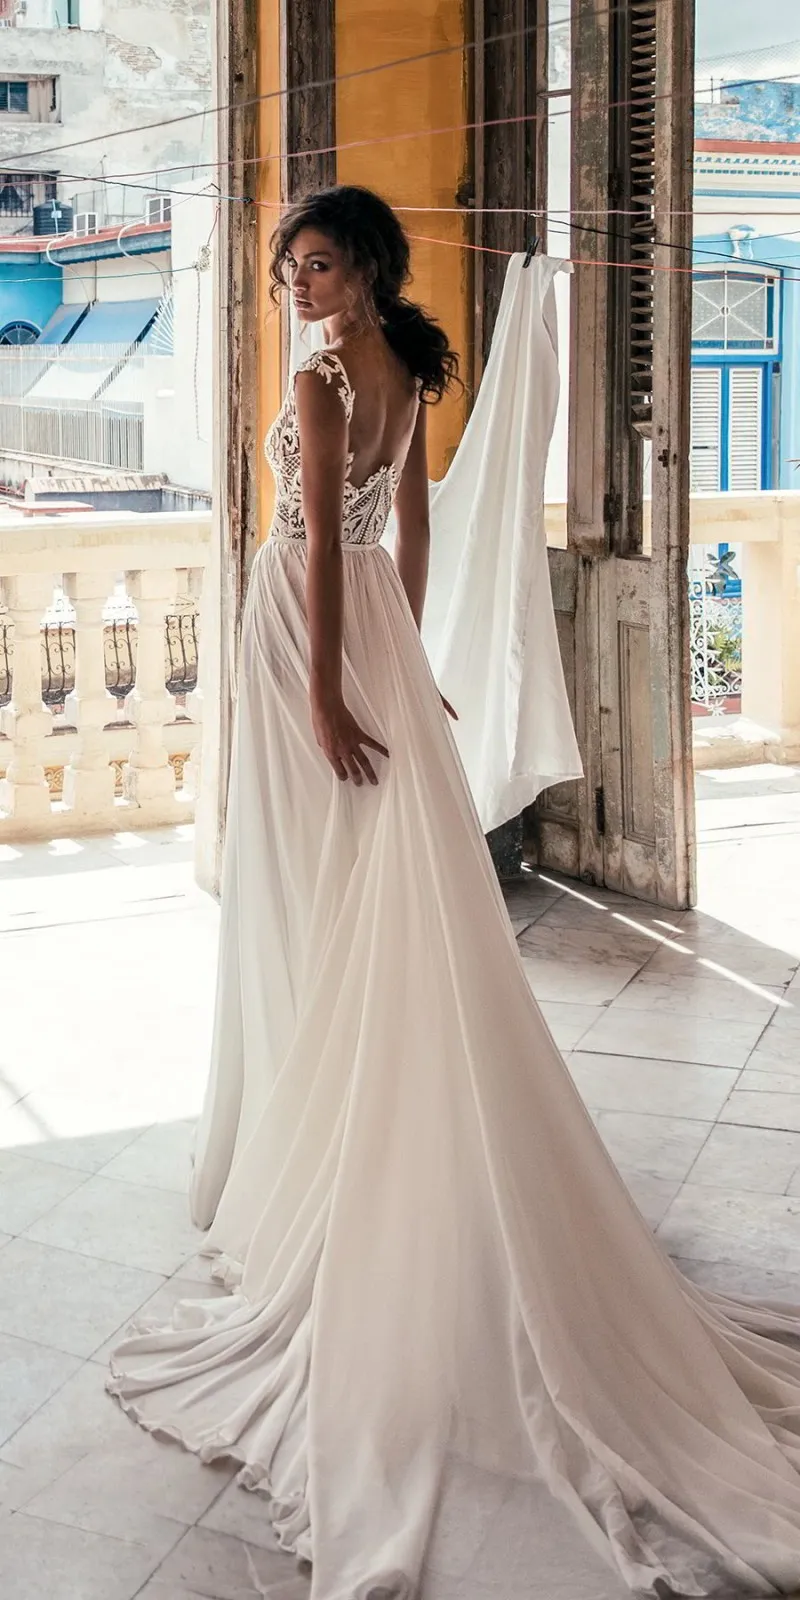 2018 Julie Vino koronki boho sukienki ślubne seksowne szyfonowe głębokie V Neck High podzielone suknie ślubne Vestido de novia2704